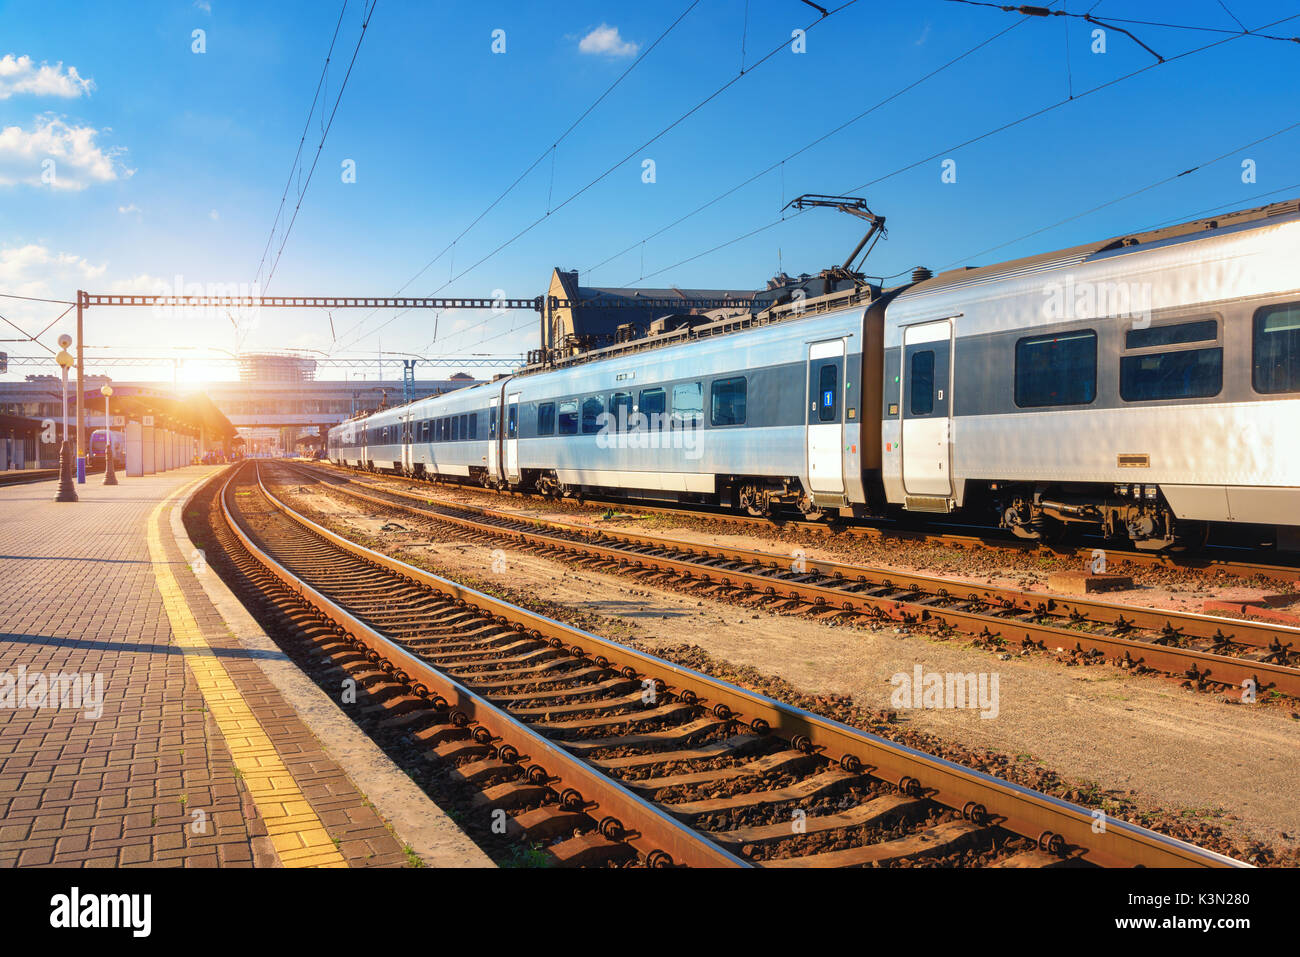 Schöne Personenzug am Bahnhof bei Sonnenuntergang. Gewerbliche Anzeigen mit modernen Intercity Zug, Bahn, Bahnsteig und blauer Himmel in Th Stockfoto